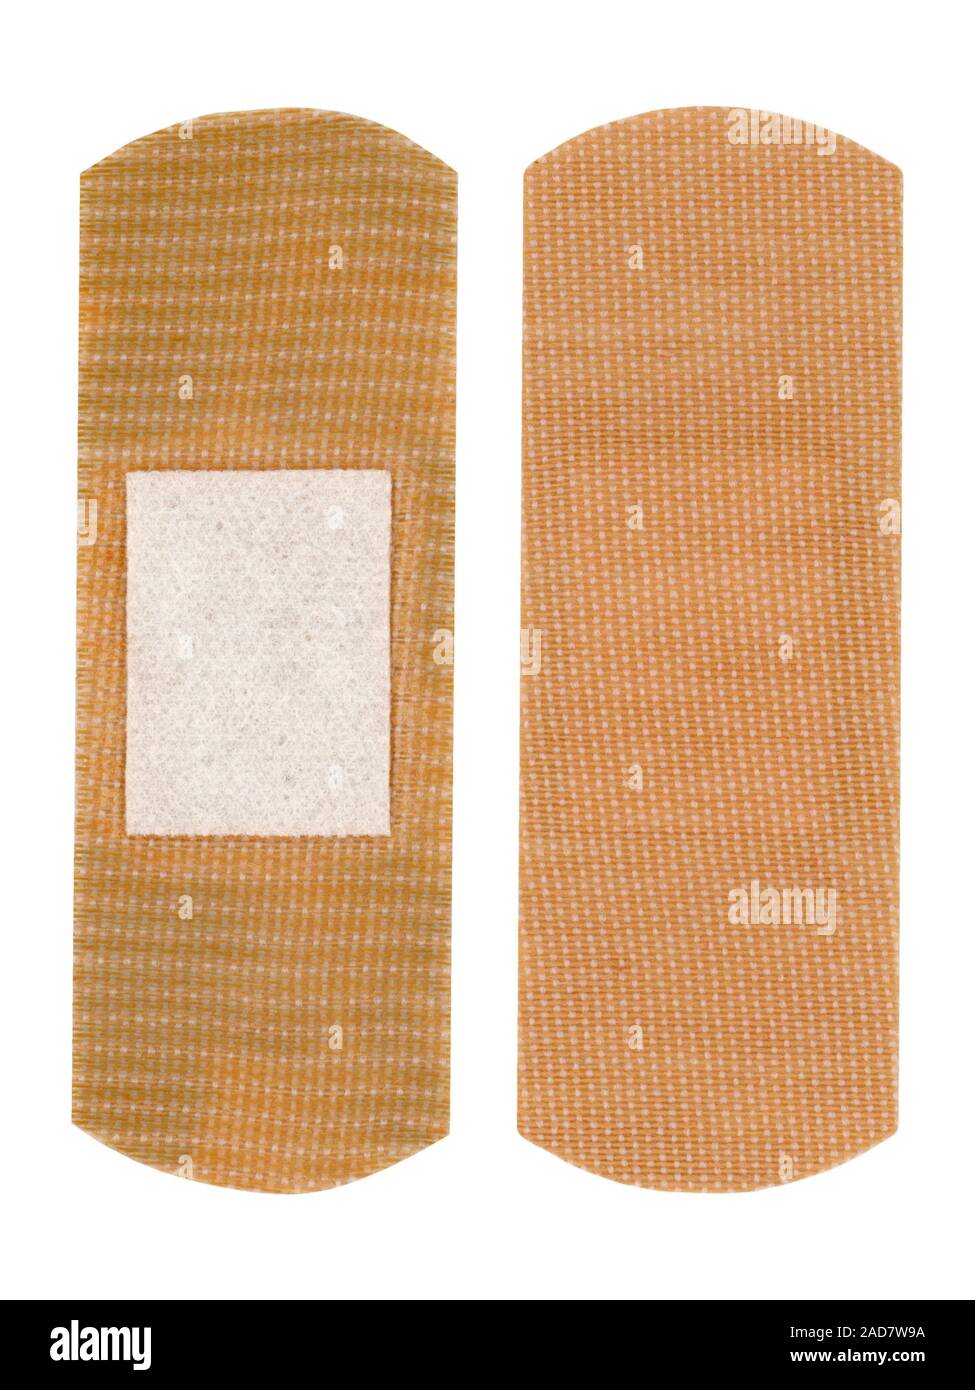 band aid bandage isolated over white Stock Photo